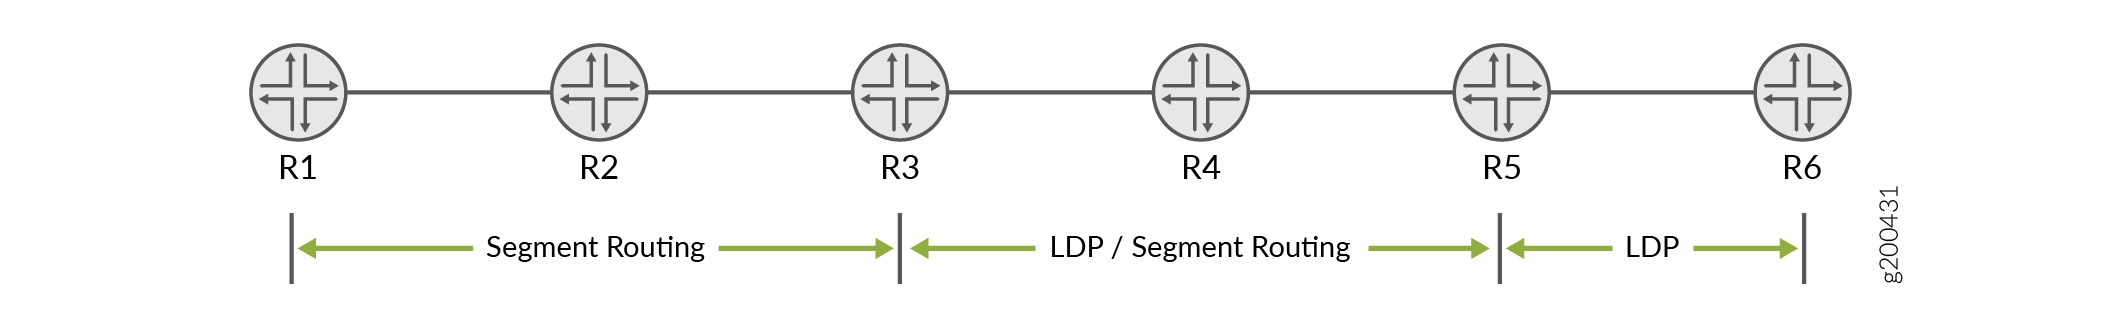 OSPF를 사용한 LDP와 세그먼트 라우팅의 상호운용성을 갖춘 LDP 토폴로지 샘플